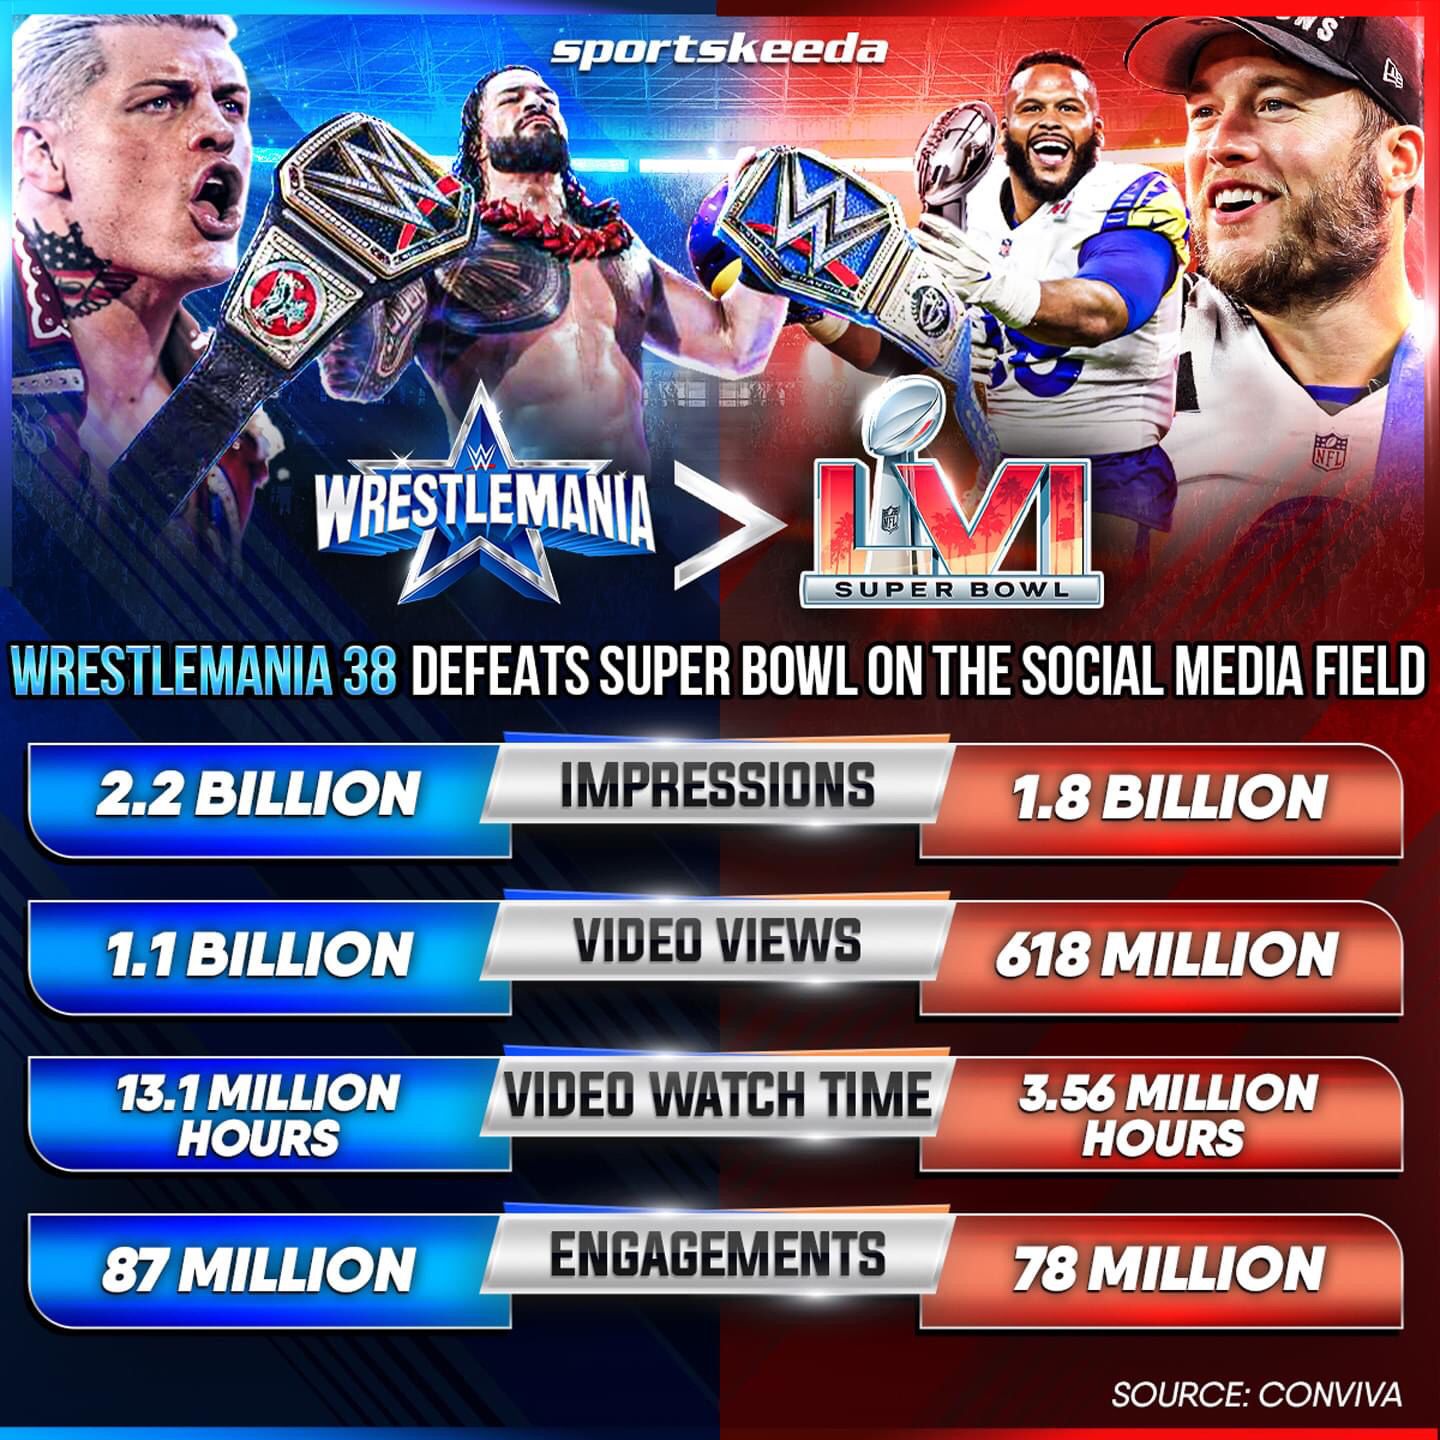 WrestleMania 38 un successo social: distrutto il Super Bowl